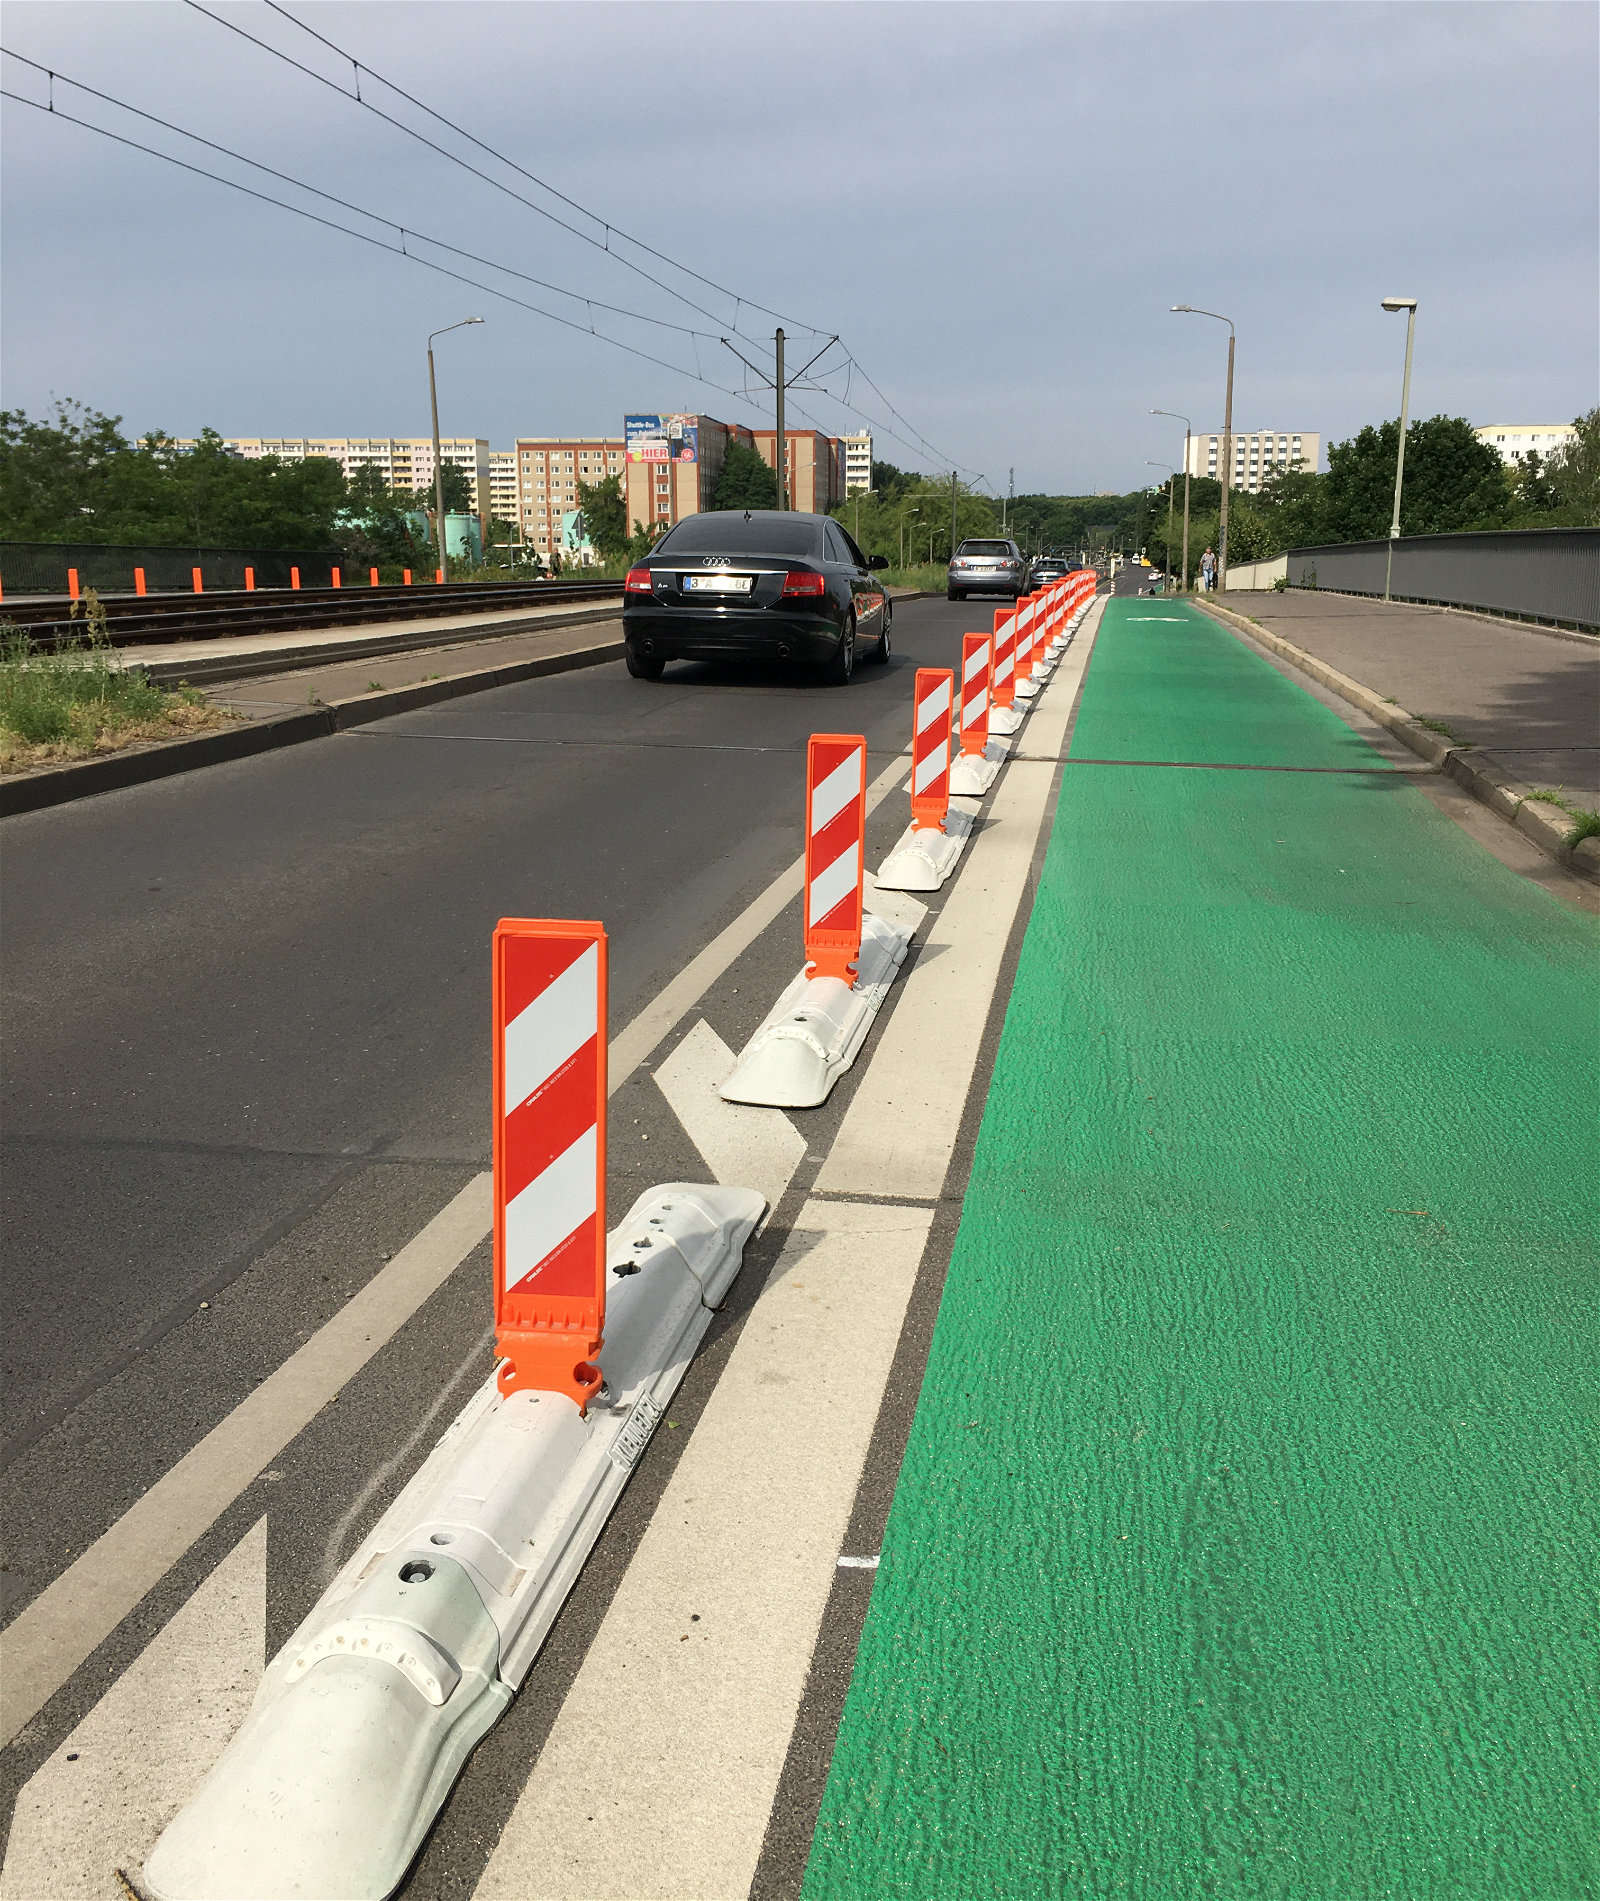 Anwendungsbeispiel: Das -Bike Lane- System ist weltweit erfolgreich integriert für flexible und einfache Verkehrslösungen.